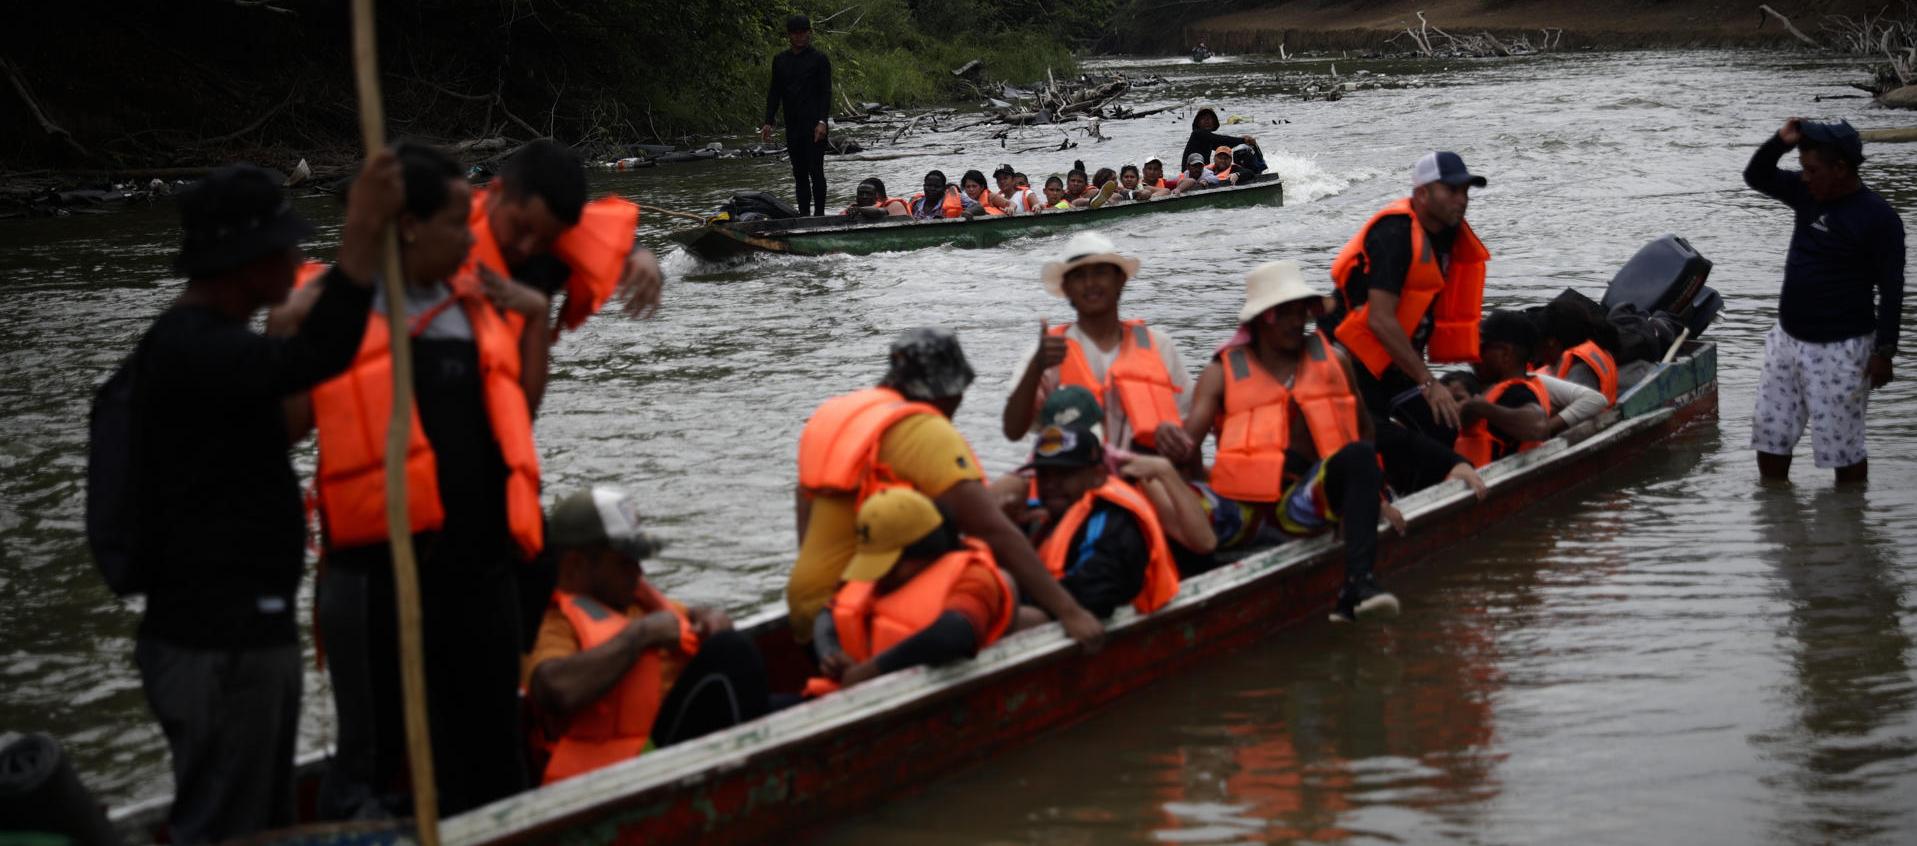 Migrantes llegan en canoas a una estación de recepción migratoria luego de cruzar la selva del Darién, en Lajas Blancas, Panamá